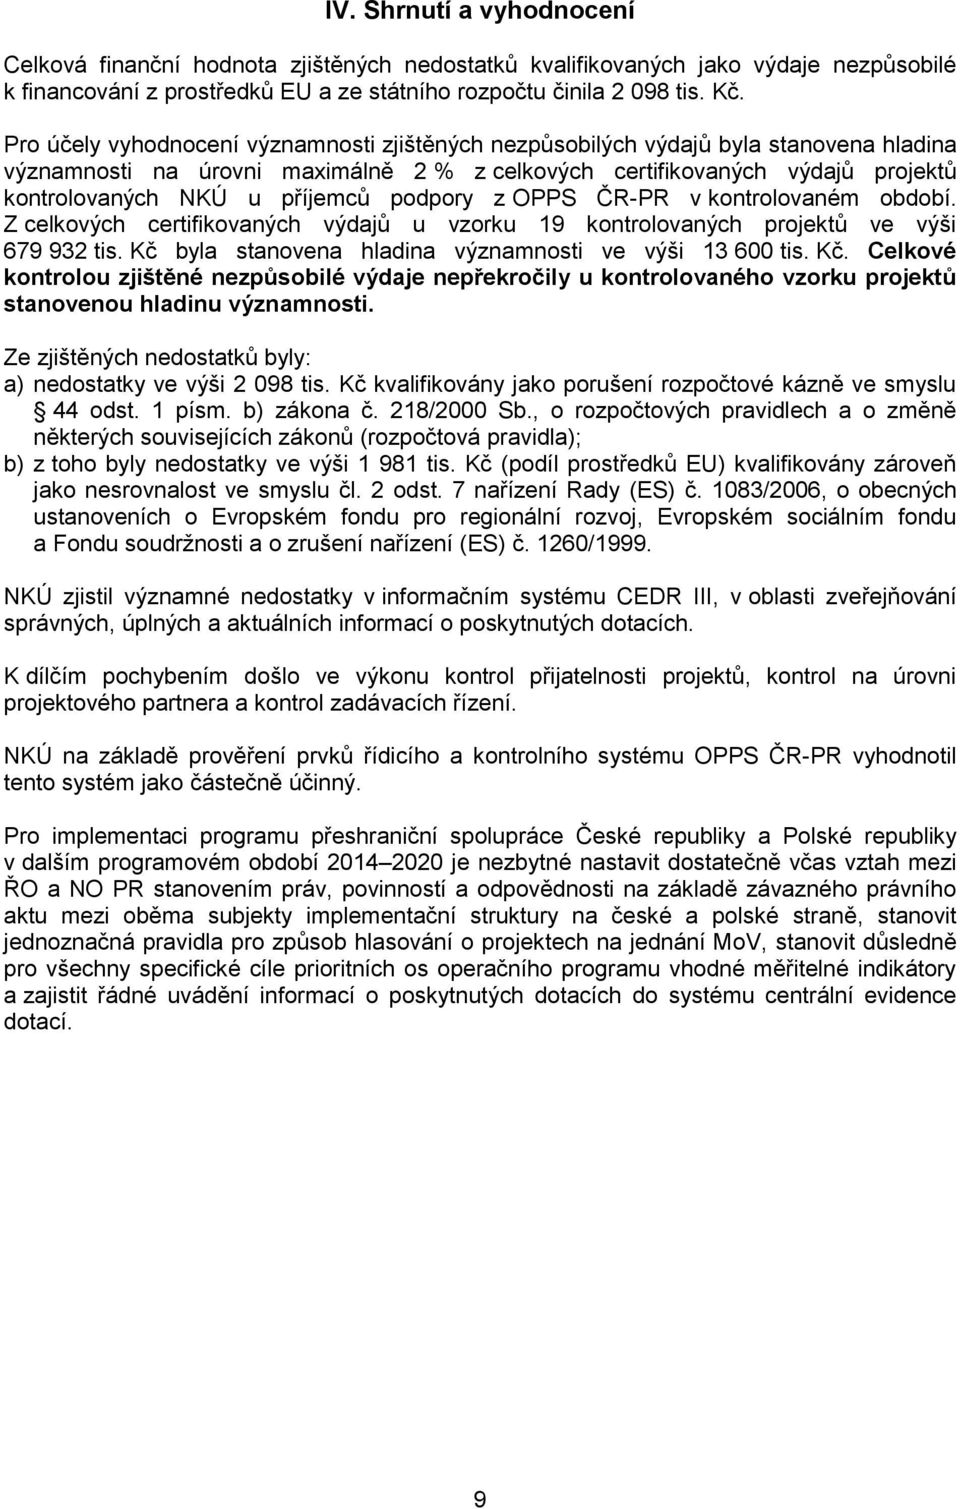 podpory z OPPS ČR-PR v kontrolovaném období. Z celkových certifikovaných výdajů u vzorku 19 kontrolovaných projektů ve výši 679 932 tis. Kč 